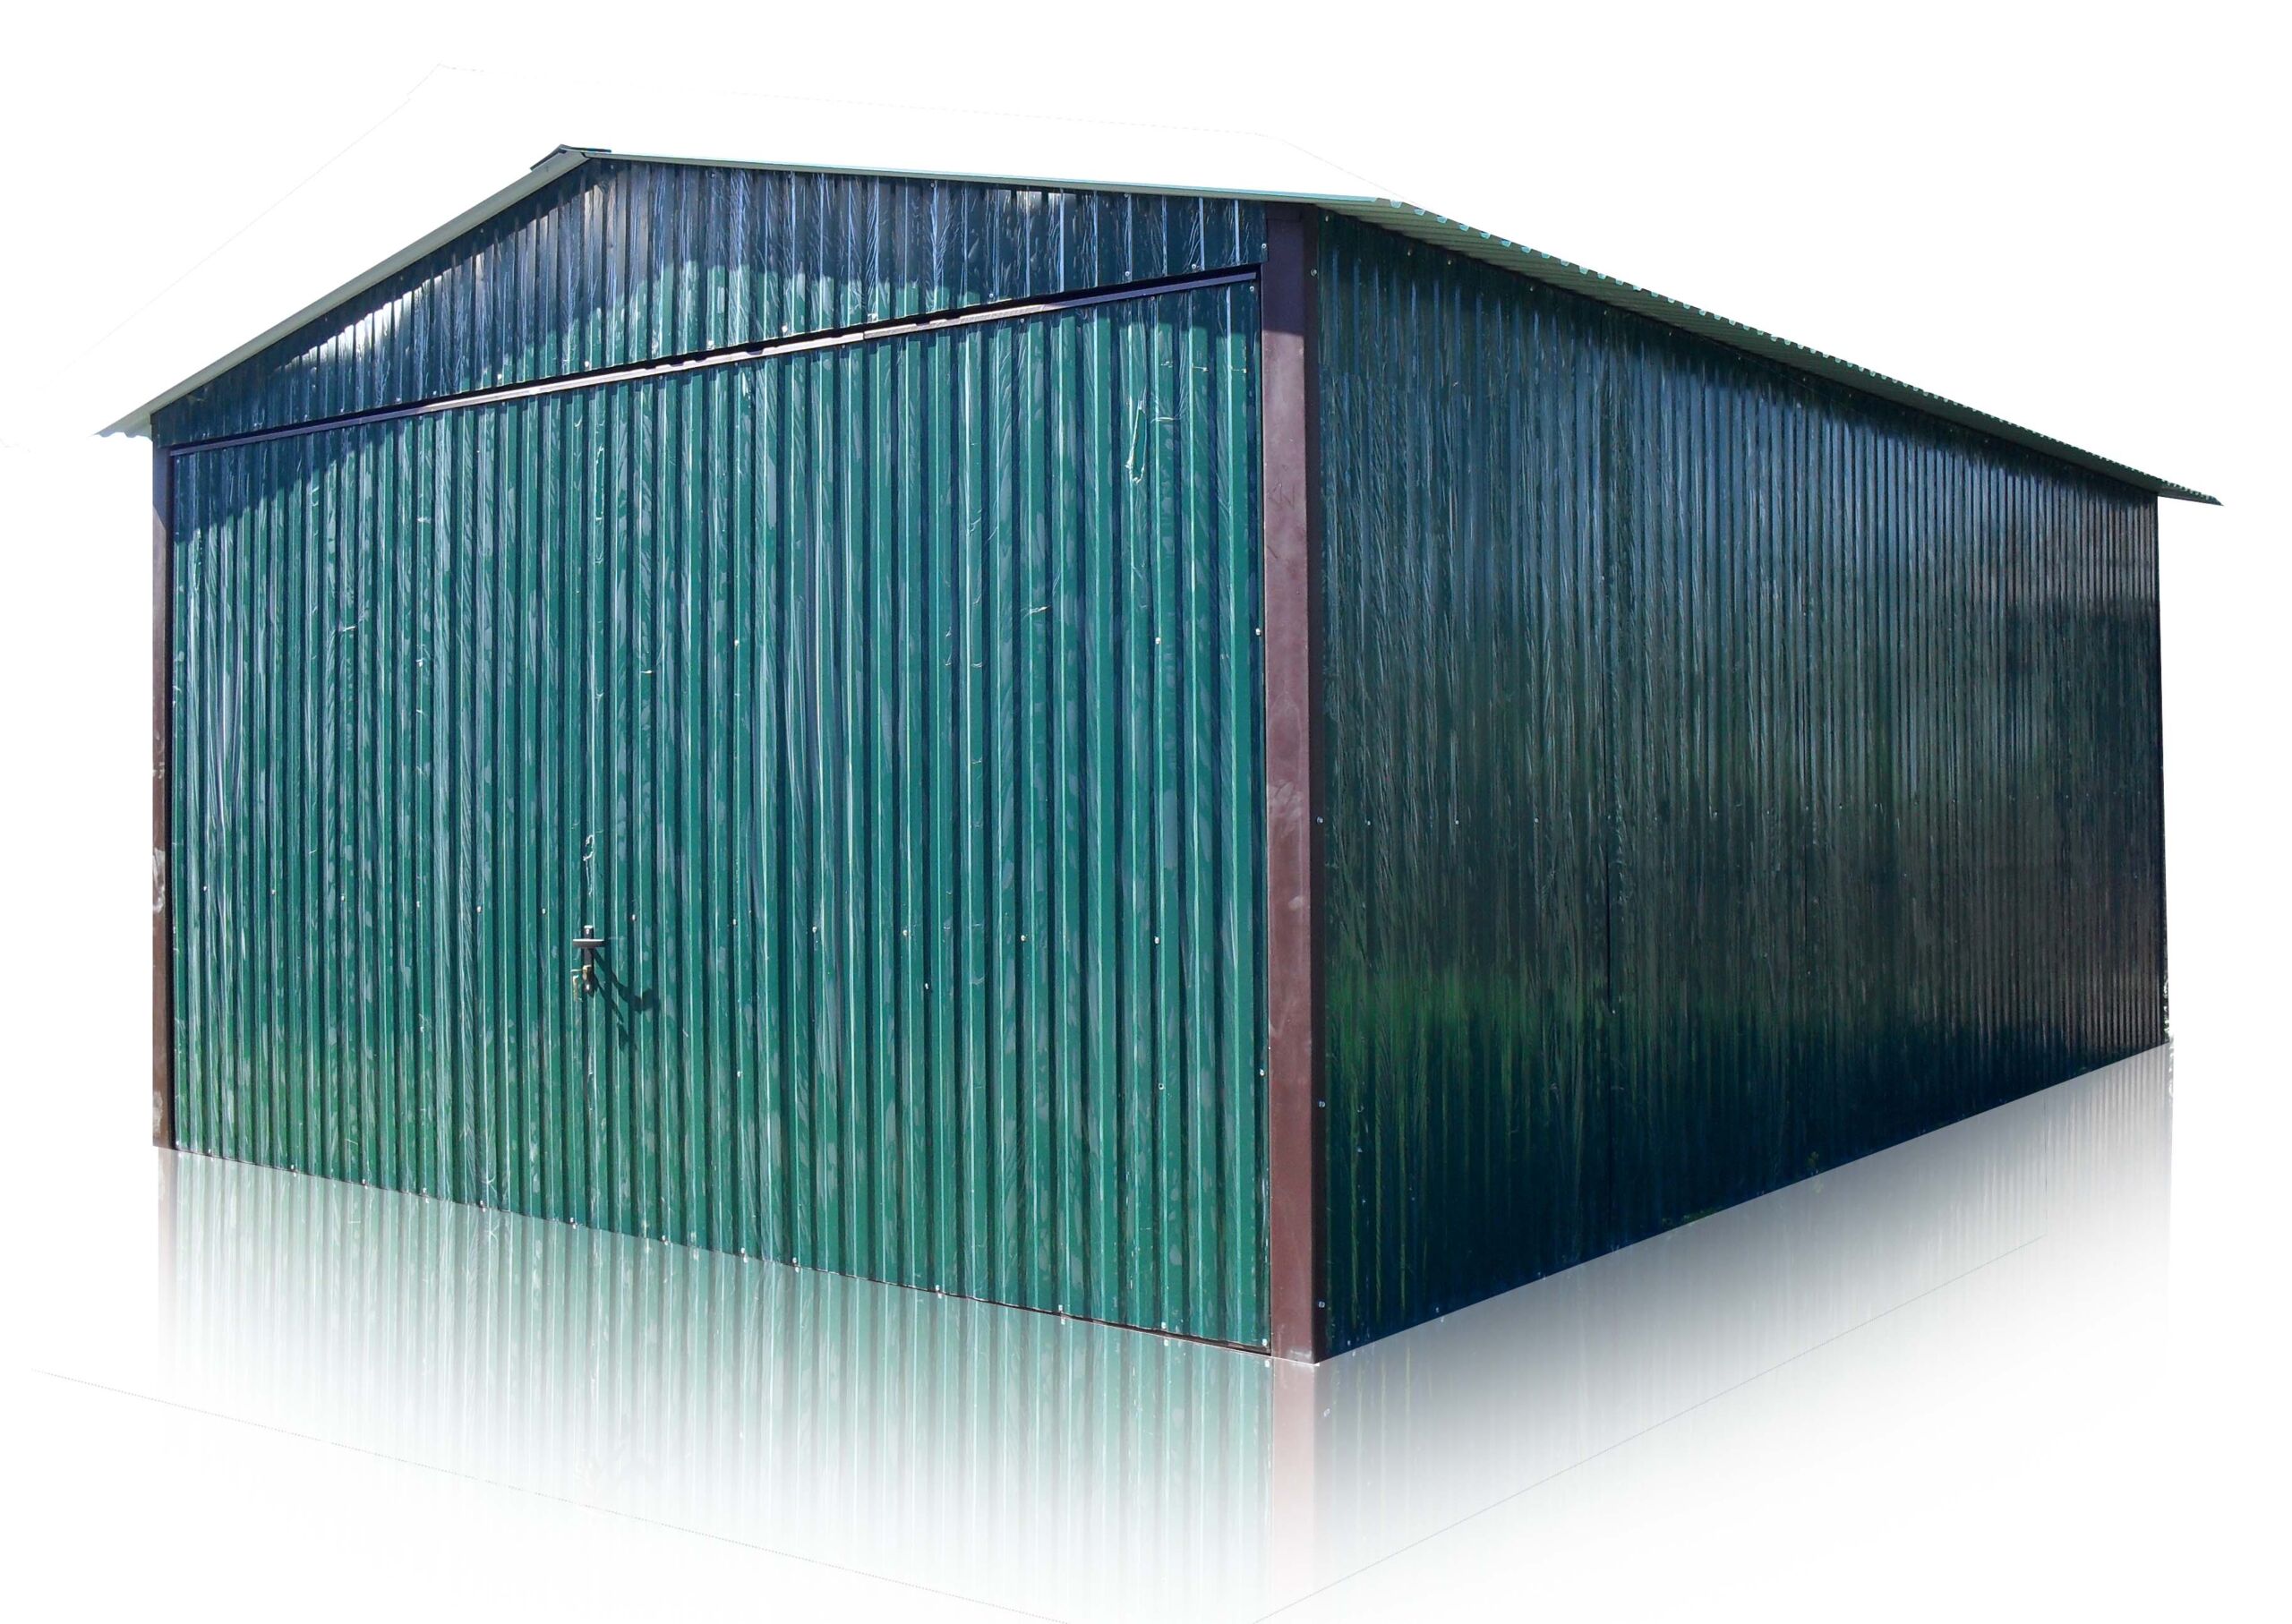 Plechová garáž 4x6 sedlová strecha